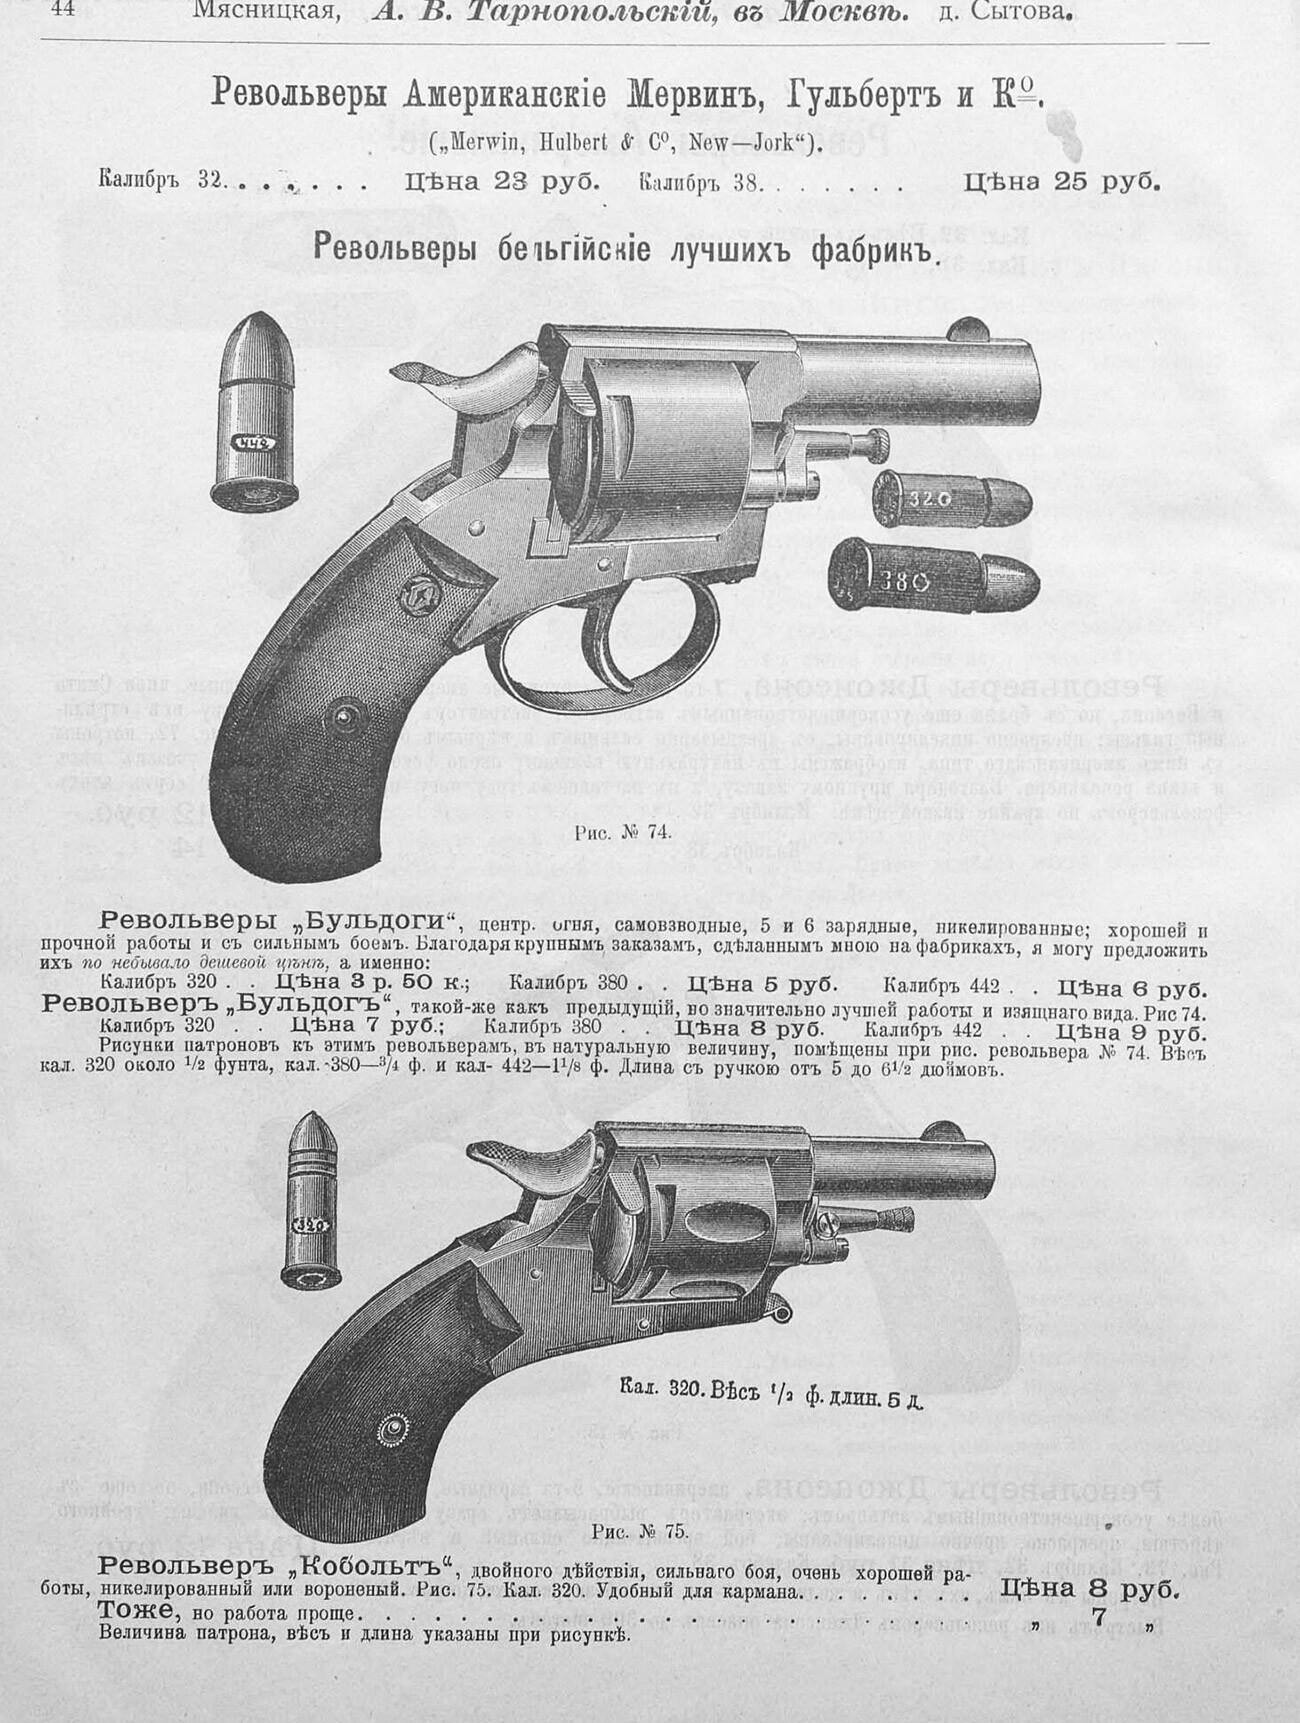 Revolvers belges proposés au public russe